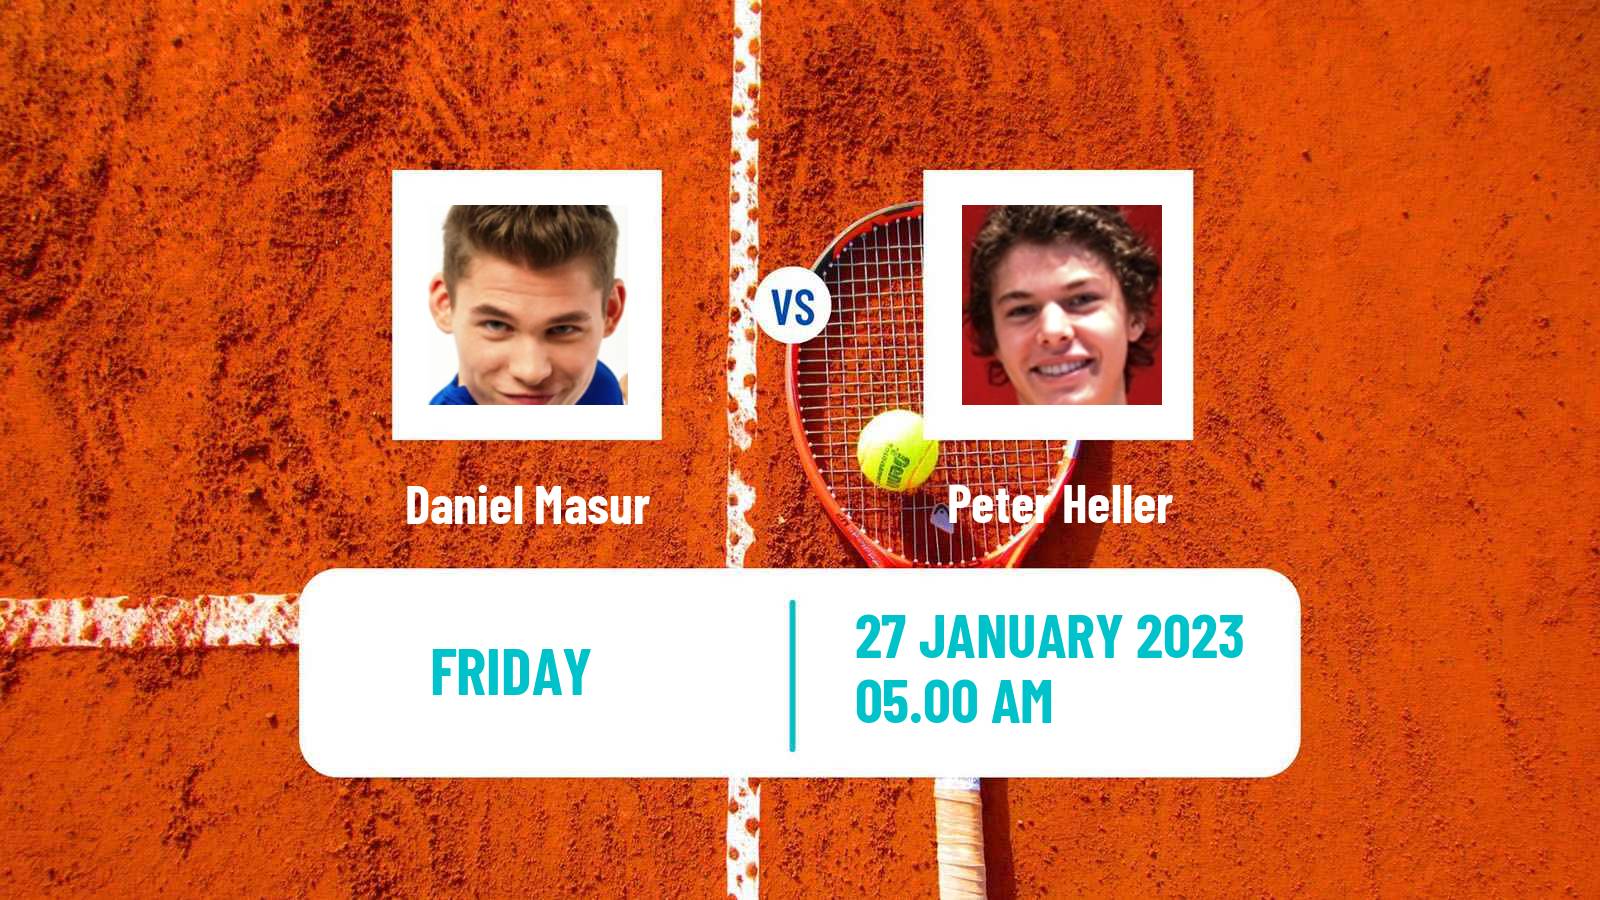 Tennis ITF Tournaments Daniel Masur - Peter Heller